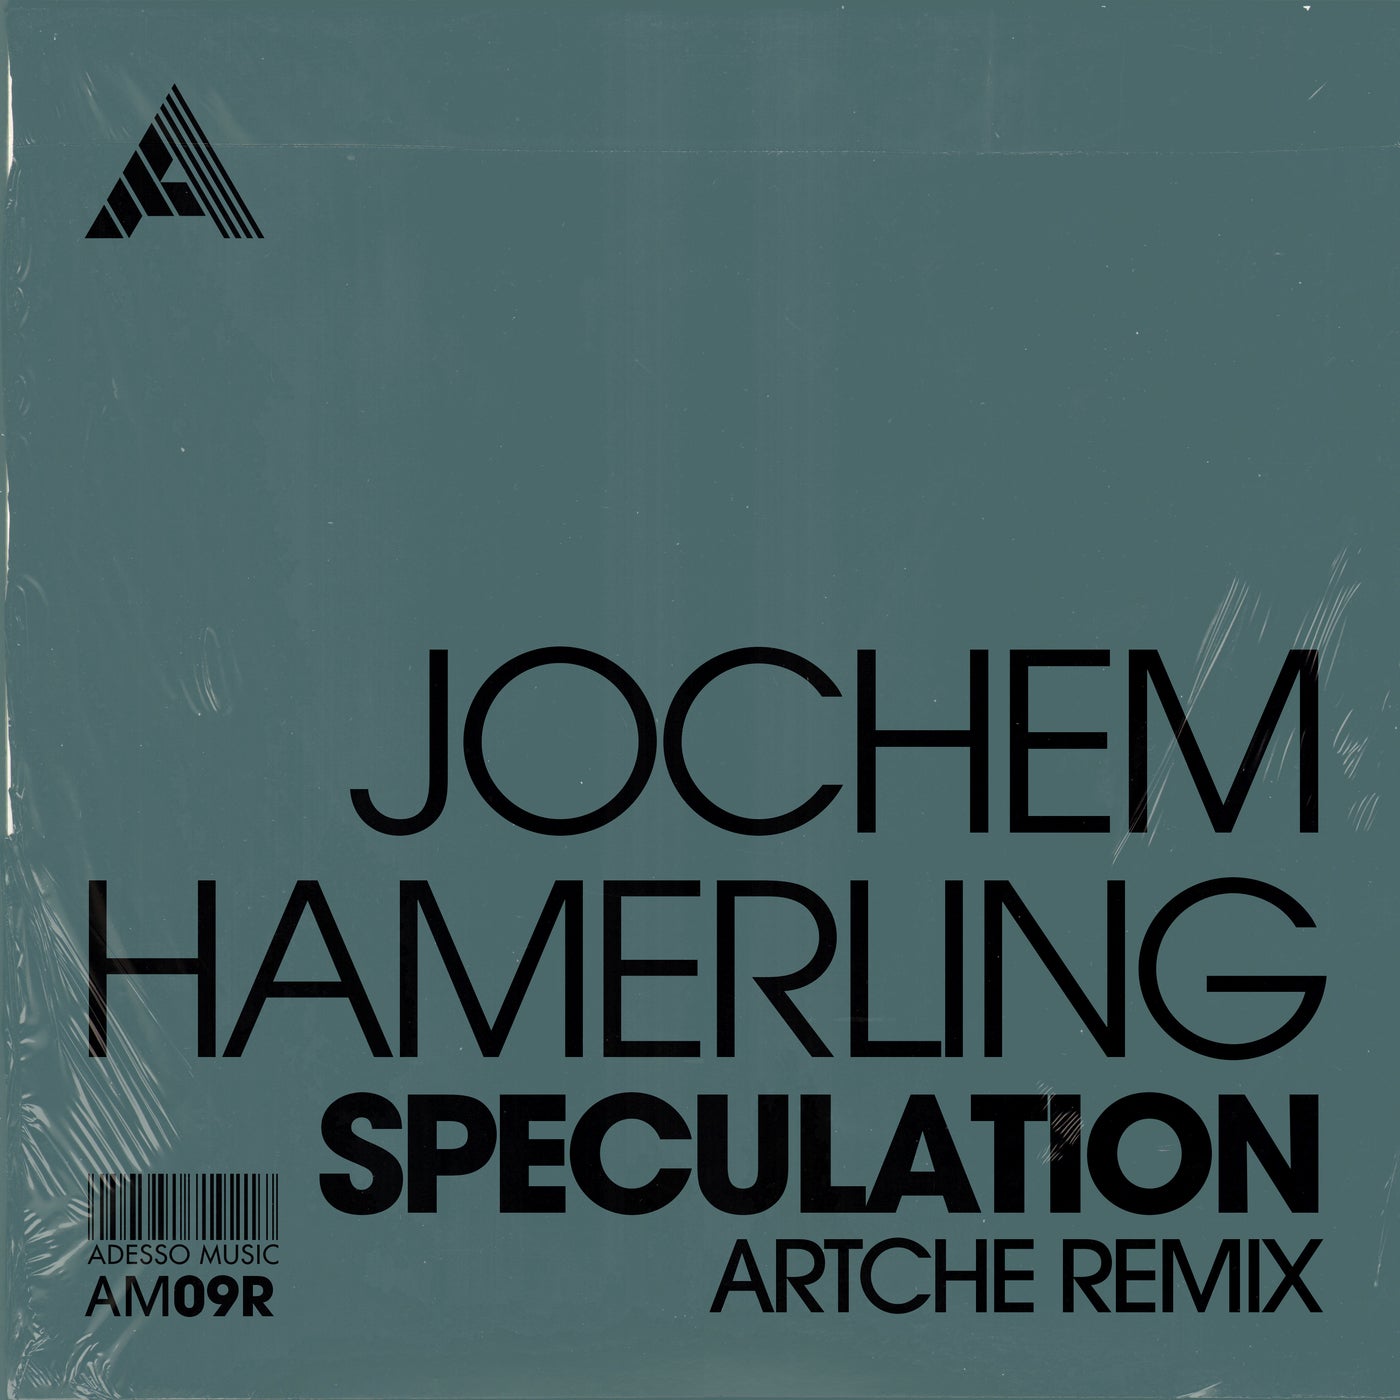 Jochem Hamerling – Speculation (Artche Remix) – Extended Mix [AM09R]